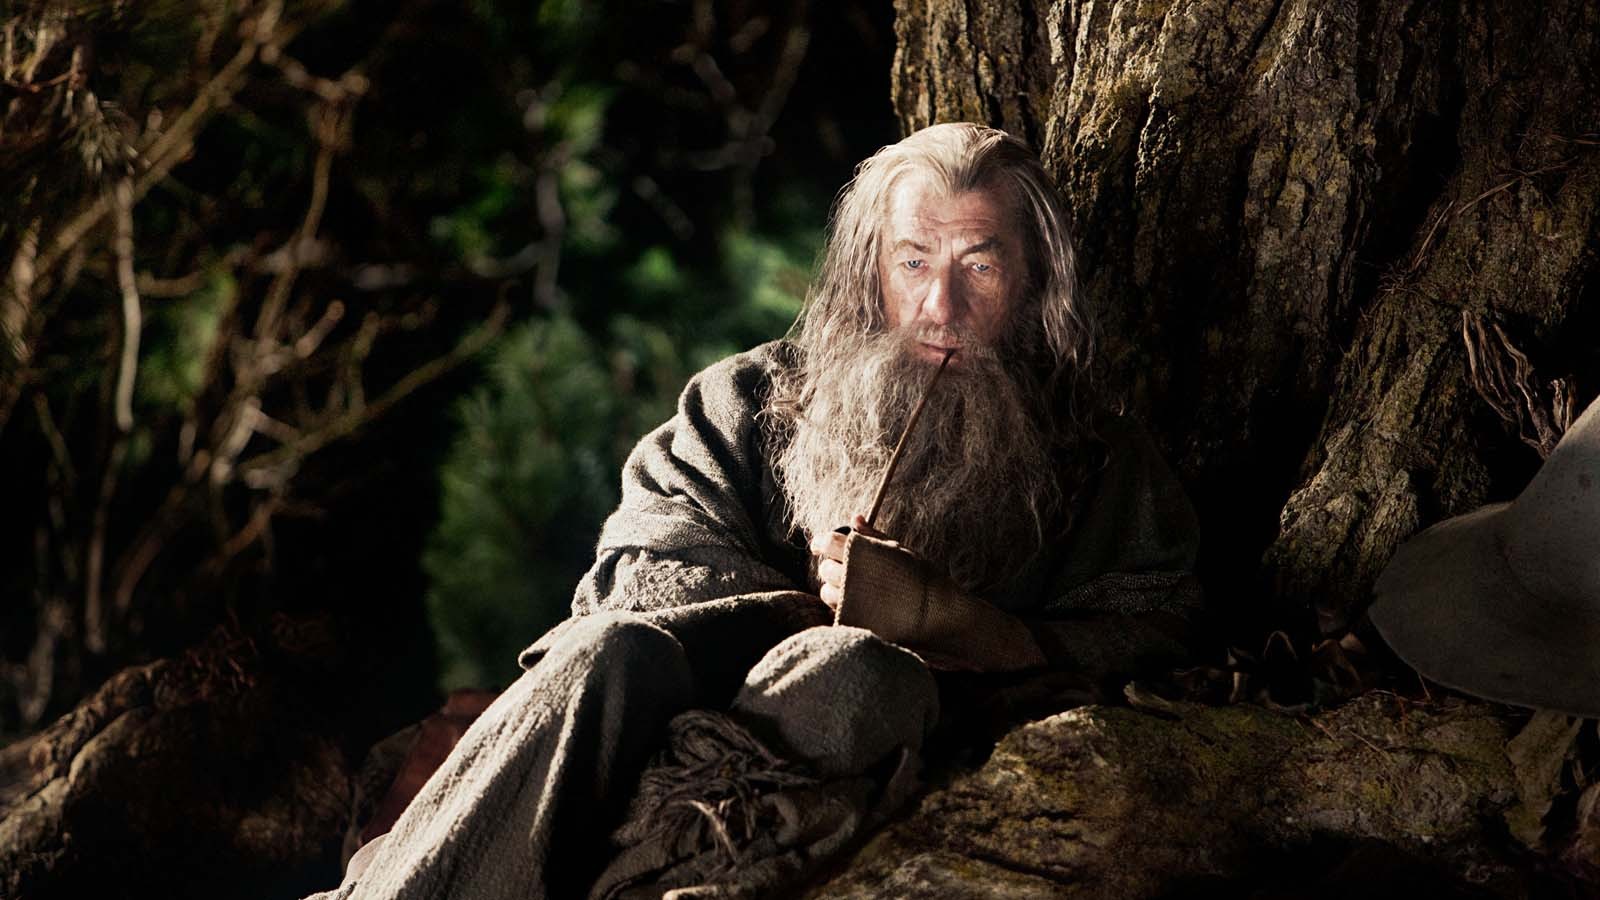 People 1600x900 Gandalf Ian McKellen wizard The Hobbit: An Unexpected Journey The Hobbit movies film stills beard actor